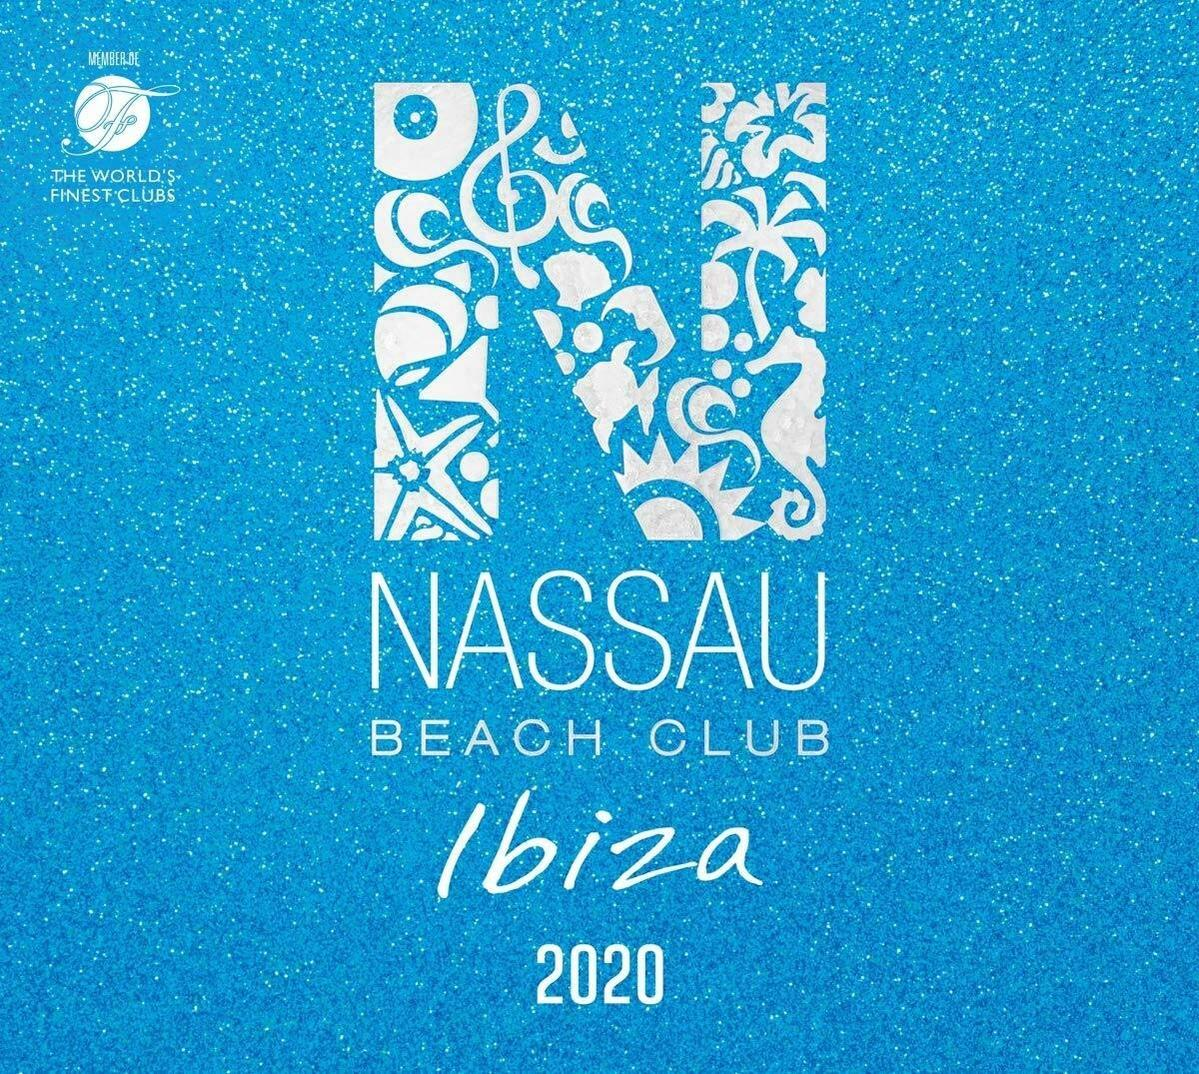 VARIOUS - NASSAU - BEACH (CD) IBIZA 2020 CLUB